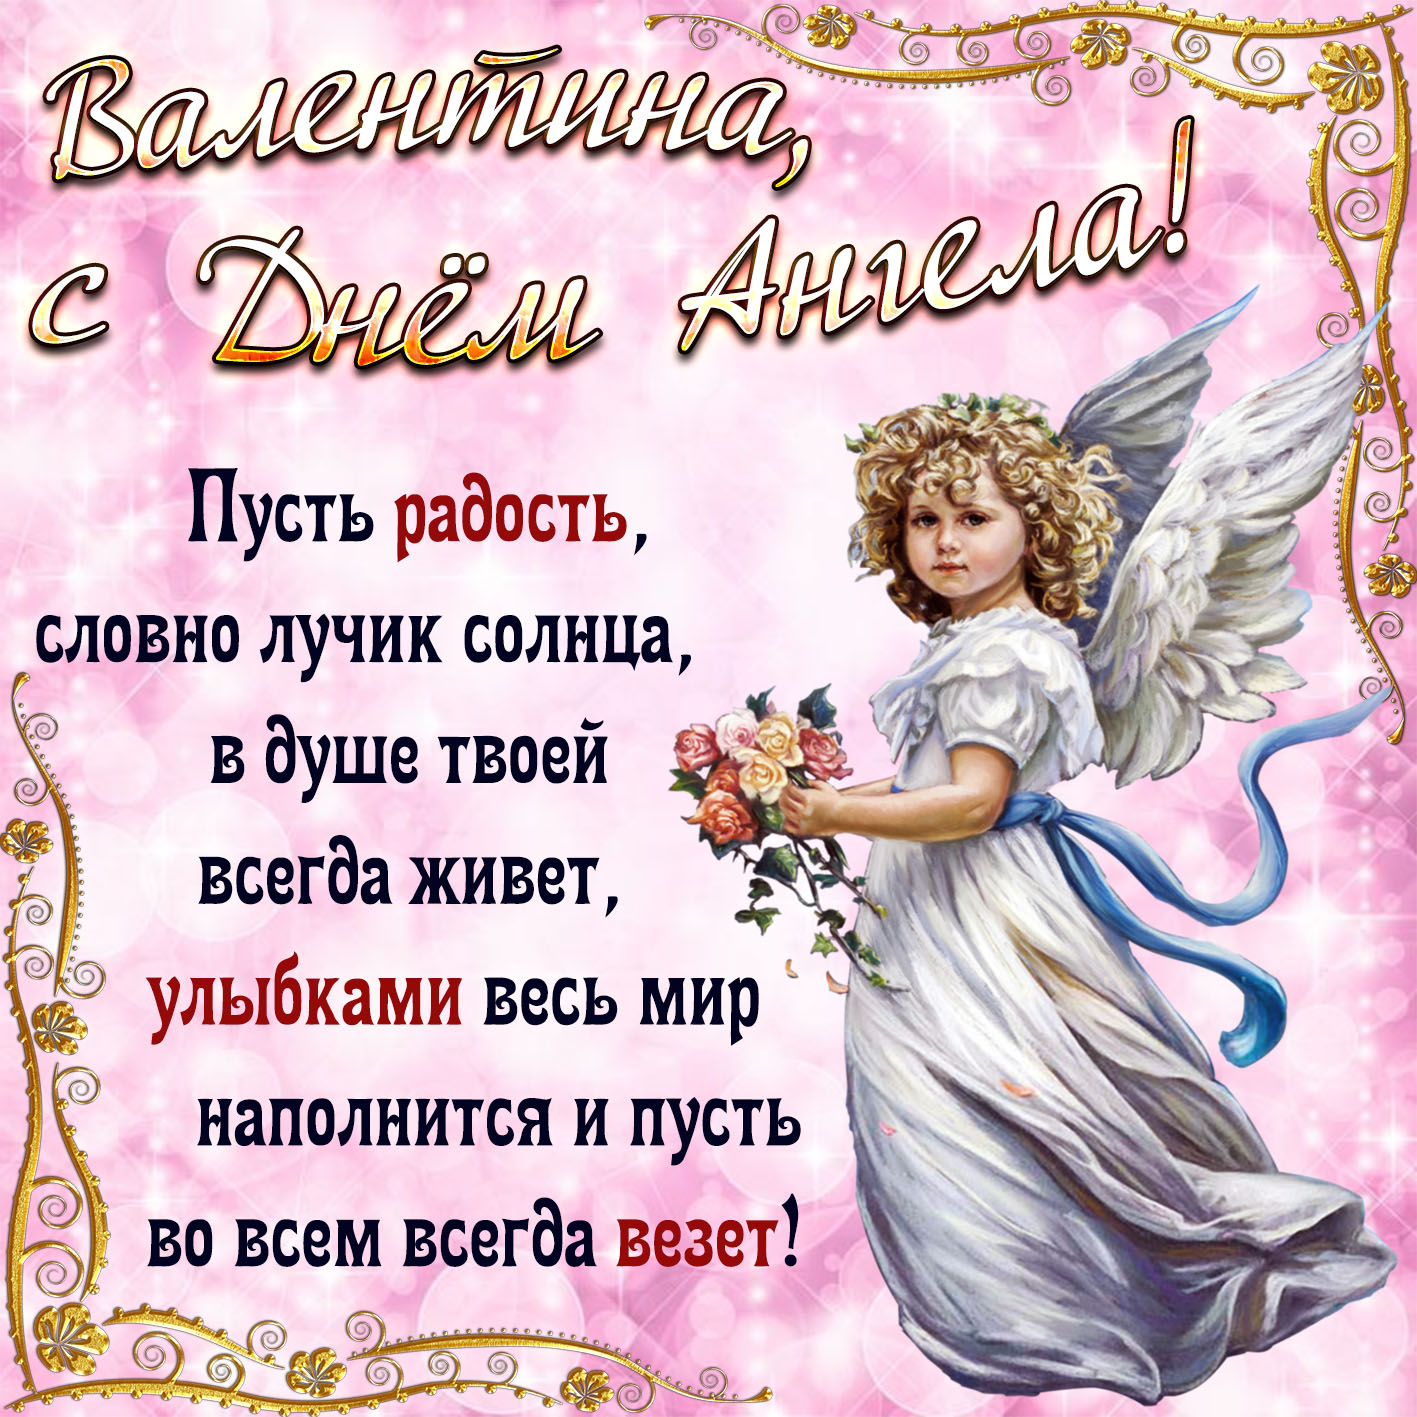 Красивая поздравительная открытка в день ангела валентине